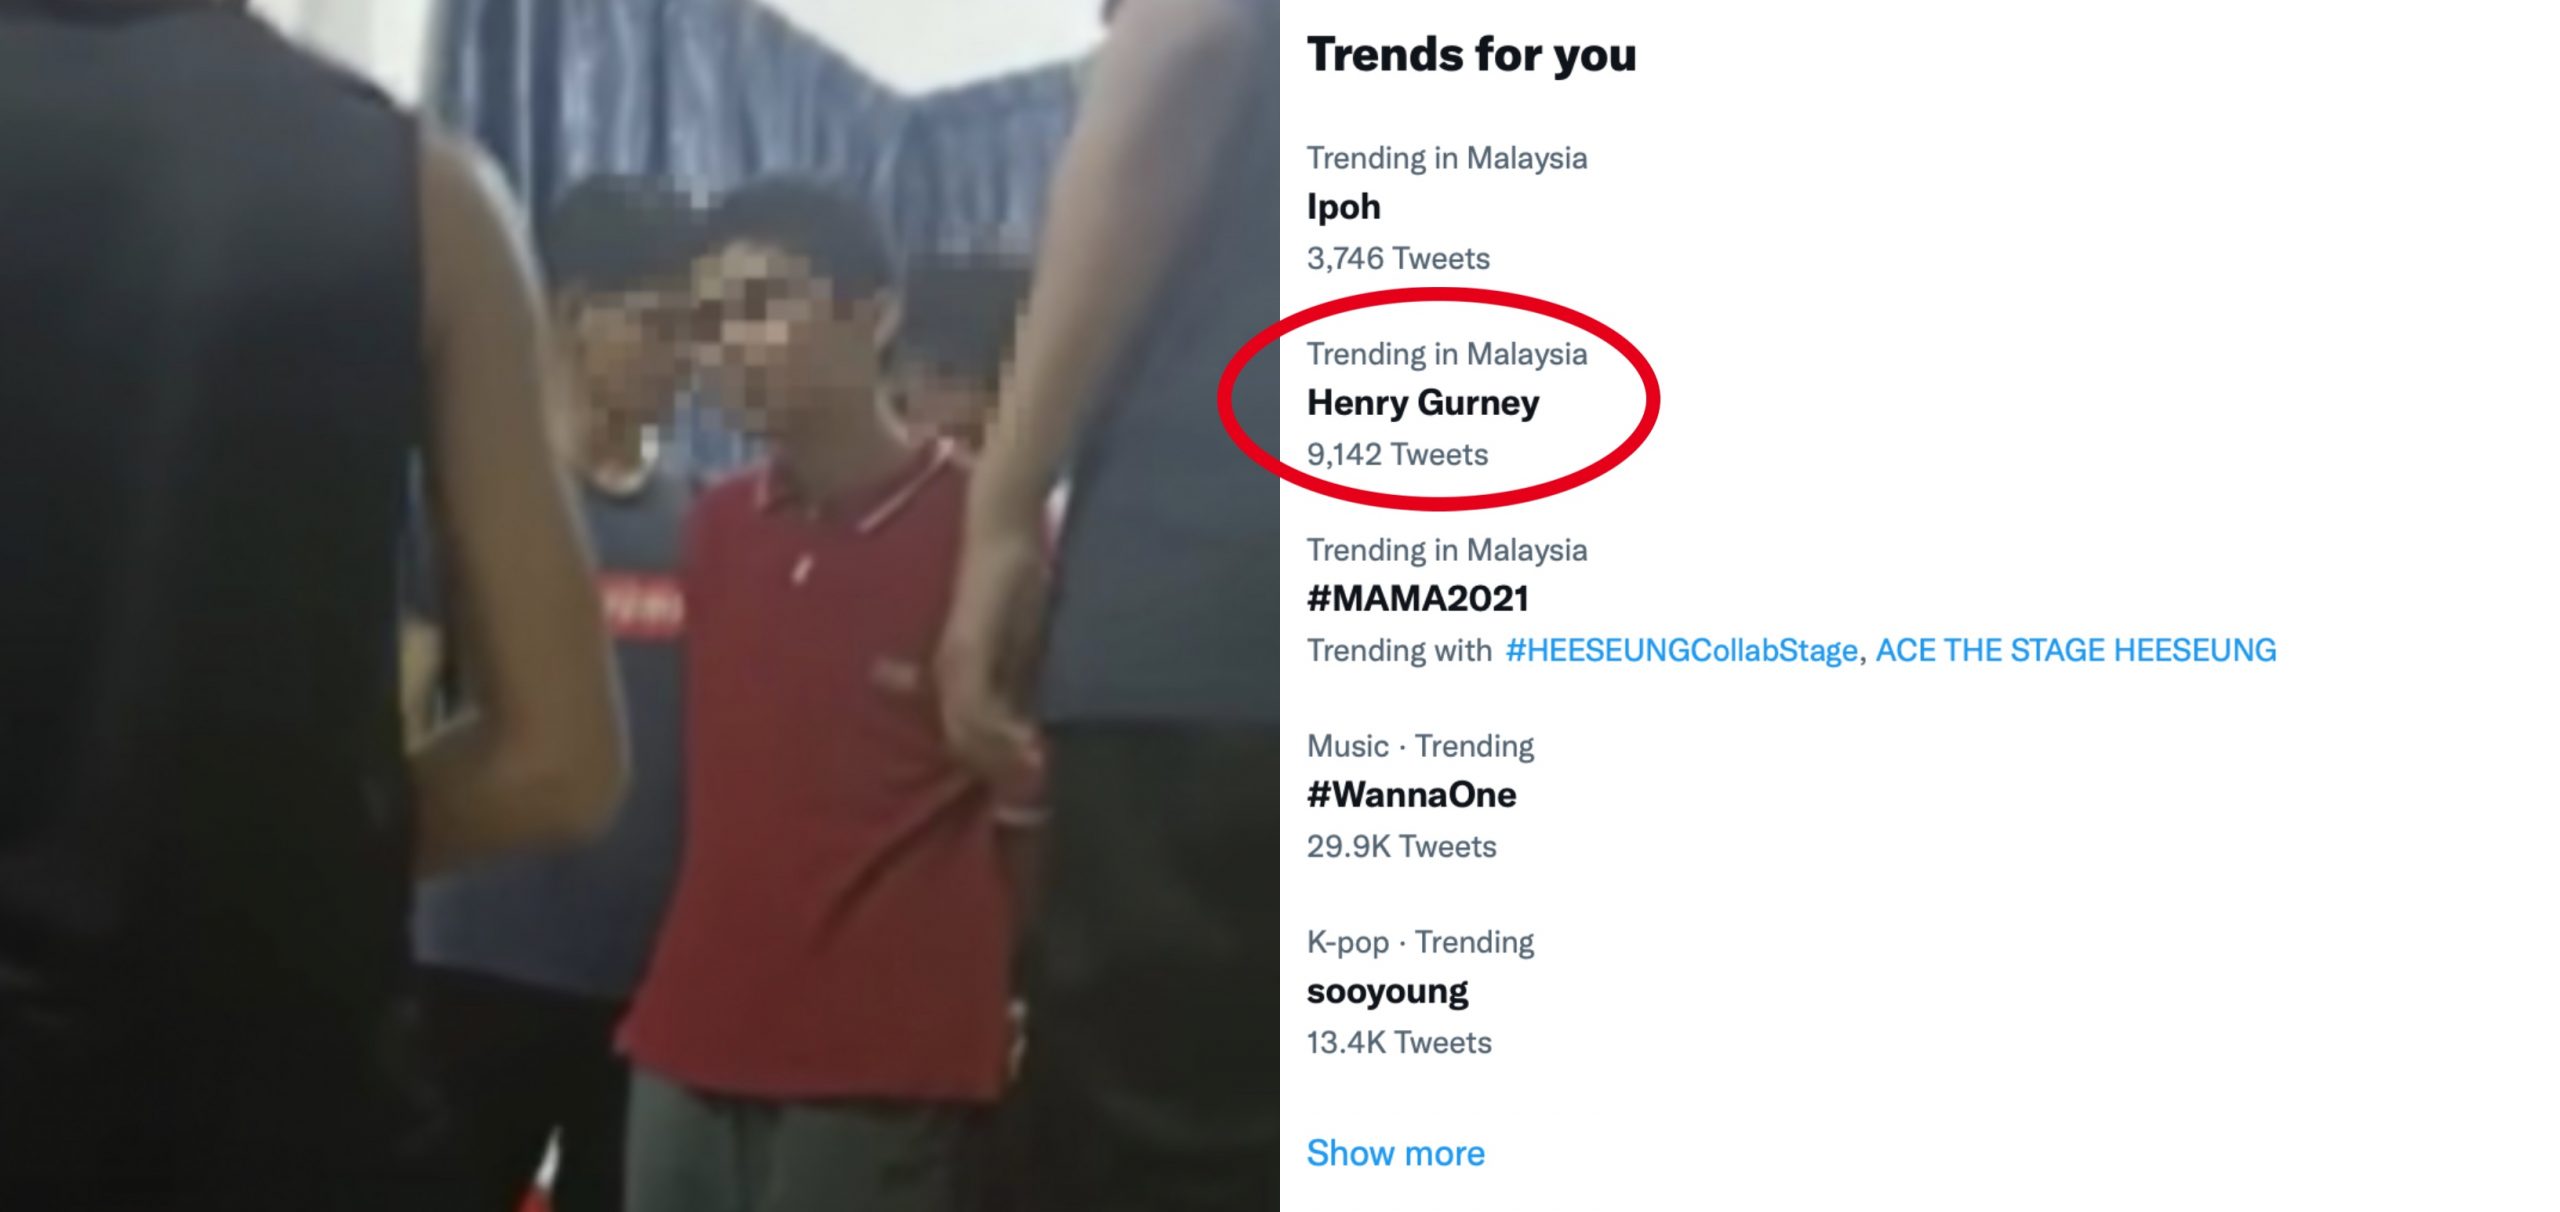 Enam Pelajar Terlibat Kes Buli Digantung Sekolah, Nama Sekolah Henry Gurney ‘Trending’ Di Twitter